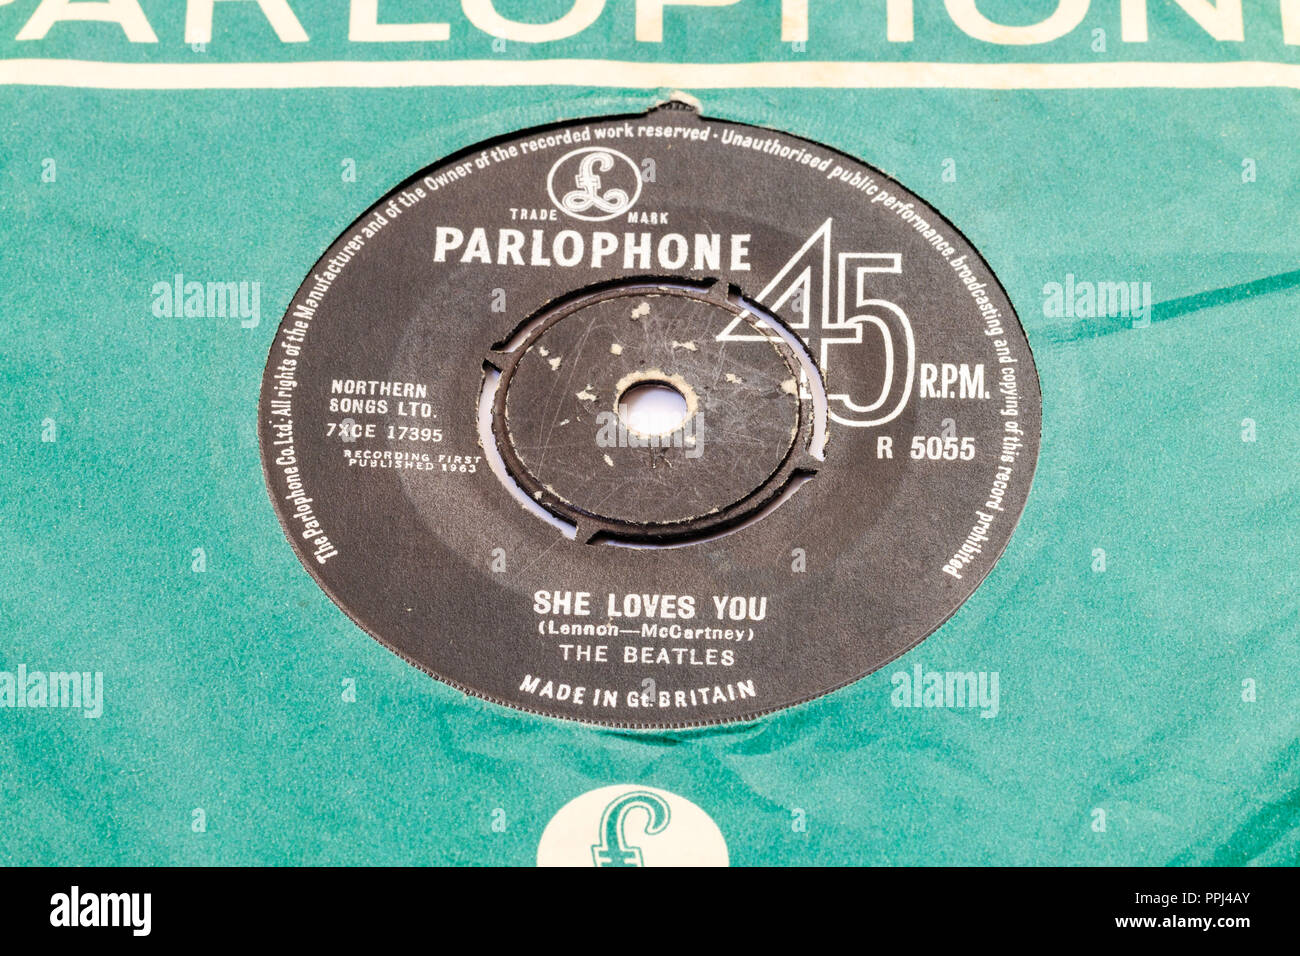 45 Single Track Record bei Parlophone grüne Abdeckung. Die Beatles, die er liebt Dich" von Lennon und McCartney. 1963 R5055 Stockfoto